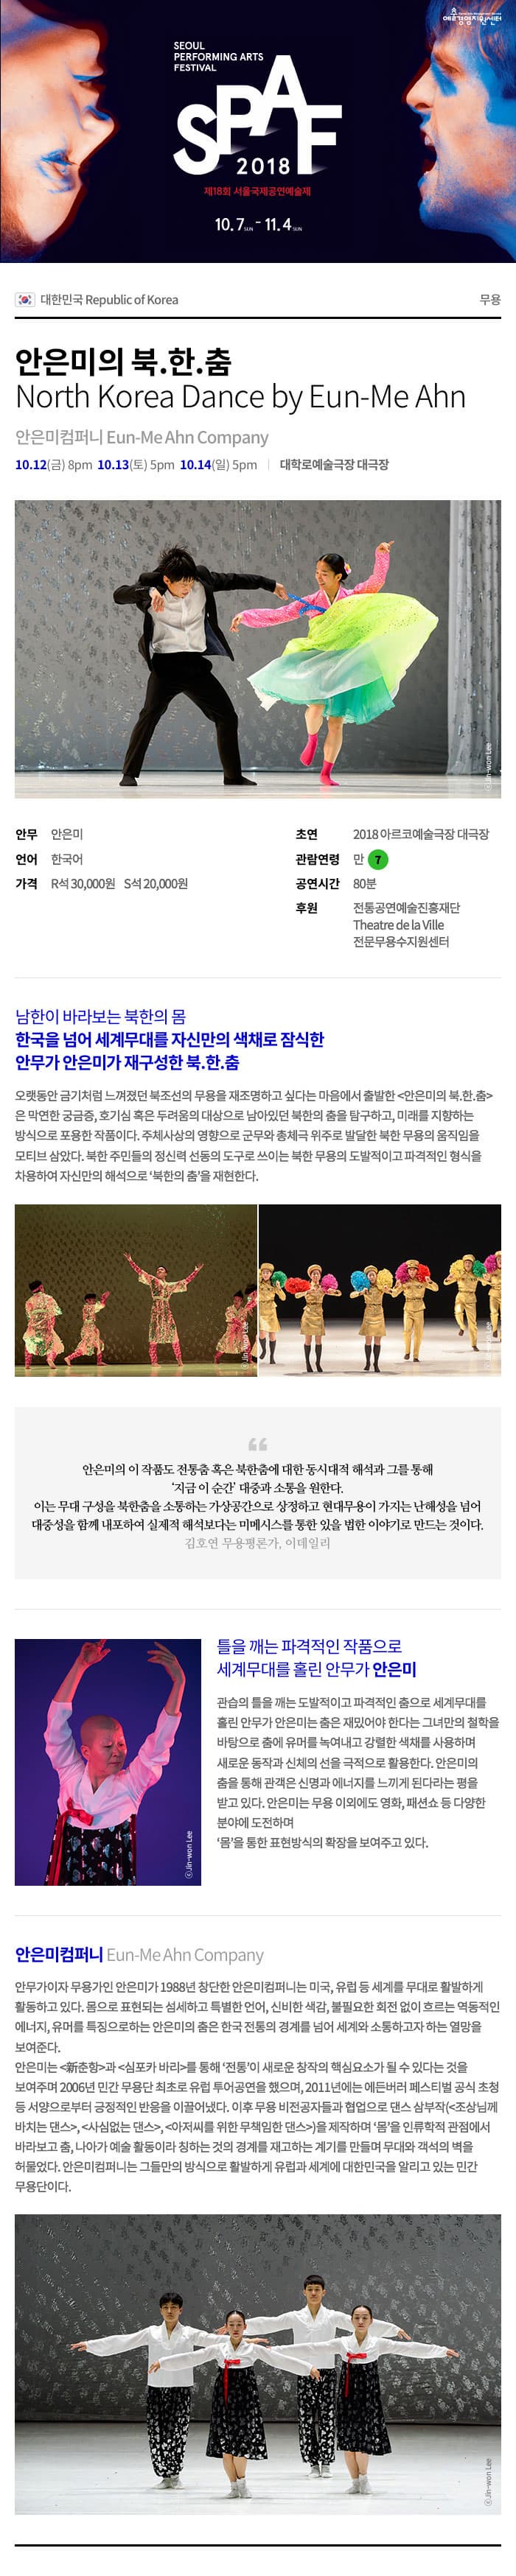 경영지원 SEOUL PERFORMING ARTS FESTIVAL 2018 제18회 서울국제공연예술제 10.7-11.4 in 0) 대한민국 Republic of Korea 안은미의 북.한.춤 North Korea Dance by Eun-Me Ahn 안은미컴퍼니 Eun-Me Ahn Company 10.12(금) 8pm 10.13(토) 5pm 10.14(일) 5pm | 대학로예술극장 대극장 안무 안은미 언어 한국어 가격 R석 30,000원 S석 20,000원 초연 2018 아르코예술극장 대극장 관람연령 만 7 공연시간 80분 후원 전통공연예술진흥재단 Theatre de la Ville 전문무용수지원센터 남한이 바라보는 북한의 몸 한국을 넘어 세계무대를 자신만의 색채로 잠식한 안무가 안은미가 재구성한 북한.춤 오랫동안 금기처럼 느껴졌던 북조선의 무용을 재조명하고 싶다는 마음에서 출발한 안은미의 북한.춤 은 막연한 궁금증, 호기심 혹은 두려움의 대상으로 남아있던 북한의 춤을 탐구하고, 미래를 지향하는 방식으로 포용한 작품이다. 주체사상의 영향으로 군무와 총체극 위주로 발달한 북한 무용의 움직임을 모티브 삼았다. 북한 주민들의 정신력 선동의 도구로 쓰이는 북한 무용의 도발적이고 파격적인 형식을 차용하여 자신만의 해석으로 북한의 춤을 재현한다. 안은미의 이 작품도 전통춤 혹은 북한춤에 대한 동시대적 해석과 그를 통해 | 지금 이 순간 대중과 소통을 원한다. 이는 무대 구성을 북한춤을 소통하는 가상공간으로 상정하고 현대무용이 가지는 난해성을 넘어 대중성을 함께 내포하여 실제적 해석보다는 미메시스를 통한 있을 법한 이야기로 만드는 것이다. 김호연 무용평론가, 이데일리 틀을 깨는 파격적인 작품으로 세계무대를 홀린 안무가 안은미 관습의 틀을 깨는 도발적이고 파격적인 춤으로 세계무대를 홀린 안무가 안은미는 춤은 재밌어야 한다는 그녀만의 철학을 바탕으로 춤에 유머를 녹여내고 강렬한 색채를 사용하며, 새로운 동작과 신체의 선을 극적으로 활용한다. 안은미의 춤을 통해 관객은 신명과 에너지를 느끼게 된다라는 평을 받고 있다. 안은미는 무용 이외에도 영화, 패션쇼 등 다양한 분야에 도전하며 몸을 통한 표현방식의 확장을 보여주고 있다. Jin-won Lee 안은미컴퍼니 Eun-Me Ahn Company 안무가이자 무용가인 안은미가 1988년 창단한 안은미컴퍼니는 미국, 유럽 등 세계를 무대로 활발하게 활동하고 있다. 몸으로 표현되는 섬세하고 특별한 언어, 신비한 색감, 불필요한 회전 없이 흐르는 역동적인 에너지, 유머를 특징으로하는 안은미의 춤은 한국 전통의 경계를 넘어 세계와 소통하고자 하는 열망을 보여준다. 안은미는 춘항과 심포카 바리를 통해 전통이 새로운 창작의 핵심요소가 될 수 있다는 것을 보여주며 2006년 민간 무용단 최초로 유럽 투어공연을 했으며, 2011년에는 에든버러 페스티벌 공식 초청 등 서양으로부터 긍정적인 반응을 이끌어냈다. 이후 무용 비전공자들과 협업으로 댄스 삼부작조상님께 바치는 댄스, 사심없는 댄스, 아저씨를 위한 무책임한 댄스을 제작하며몸을 인류학적 관점에서 바라보고 춤, 나아가 예술 활동이라 칭하는 것의 경계를 재고하는 계기를 만들며 무대와 객석의 벽을 허물었다. 안은미컴퍼니는 그들만의 방식으로 활발하게 유럽과 세계에 대한민국을 알리고 있는 민간 무용단이다. 